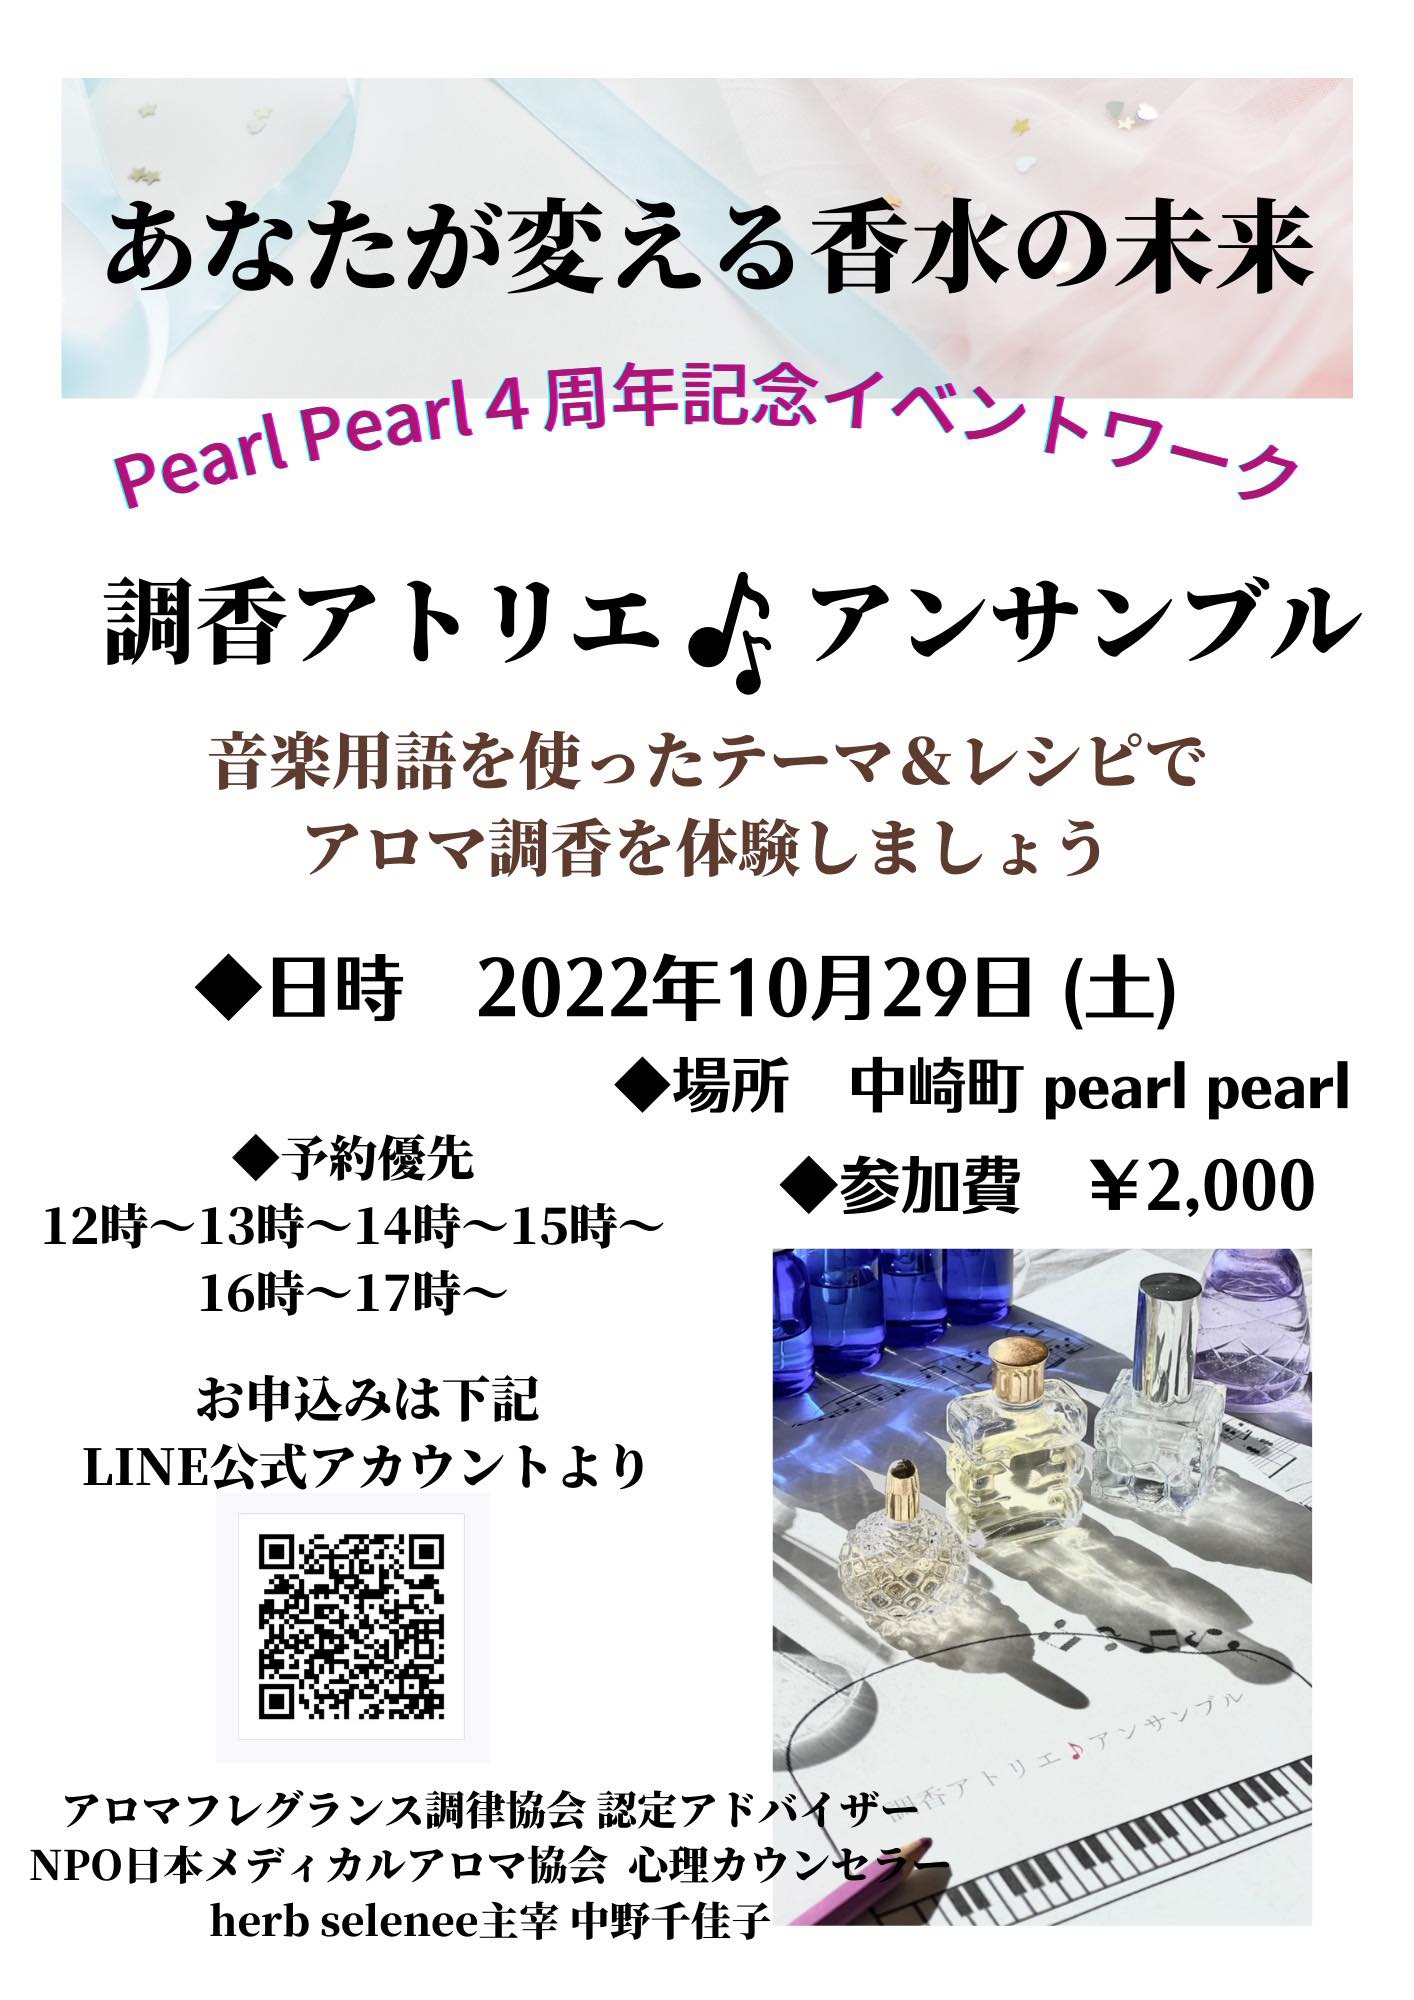 PearlPearl　 4周年イベント 29日(土)